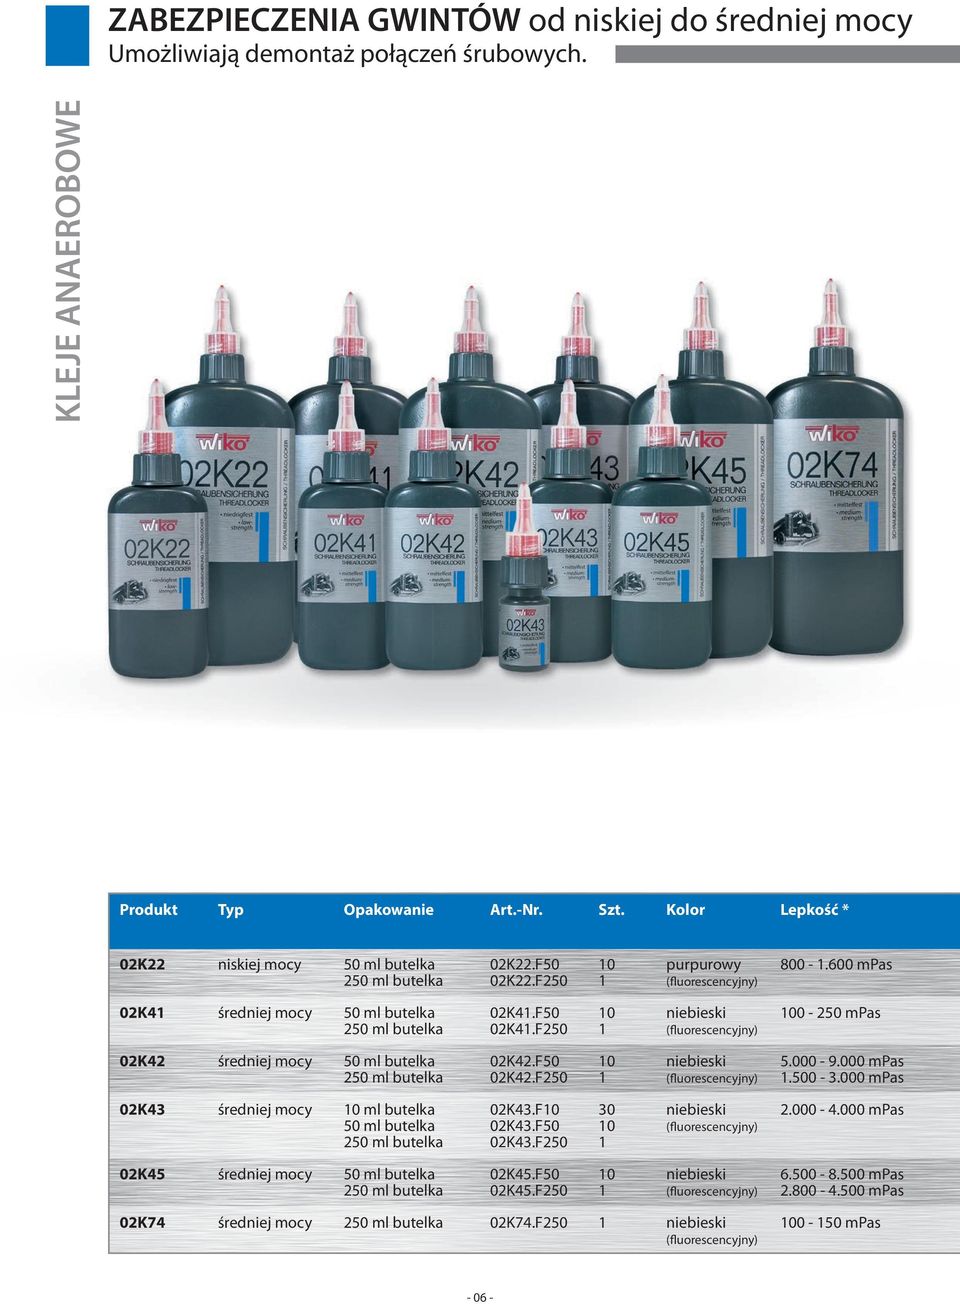 F50 10 niebieski 100-250 mpas 250 ml butelka 02K41.F250 1 (fluorescencyjny) 02K42 średniej mocy 50 ml butelka 02K42.F50 10 niebieski 5.000-9.000 mpas 250 ml butelka 02K42.F250 1 (fluorescencyjny) 1.